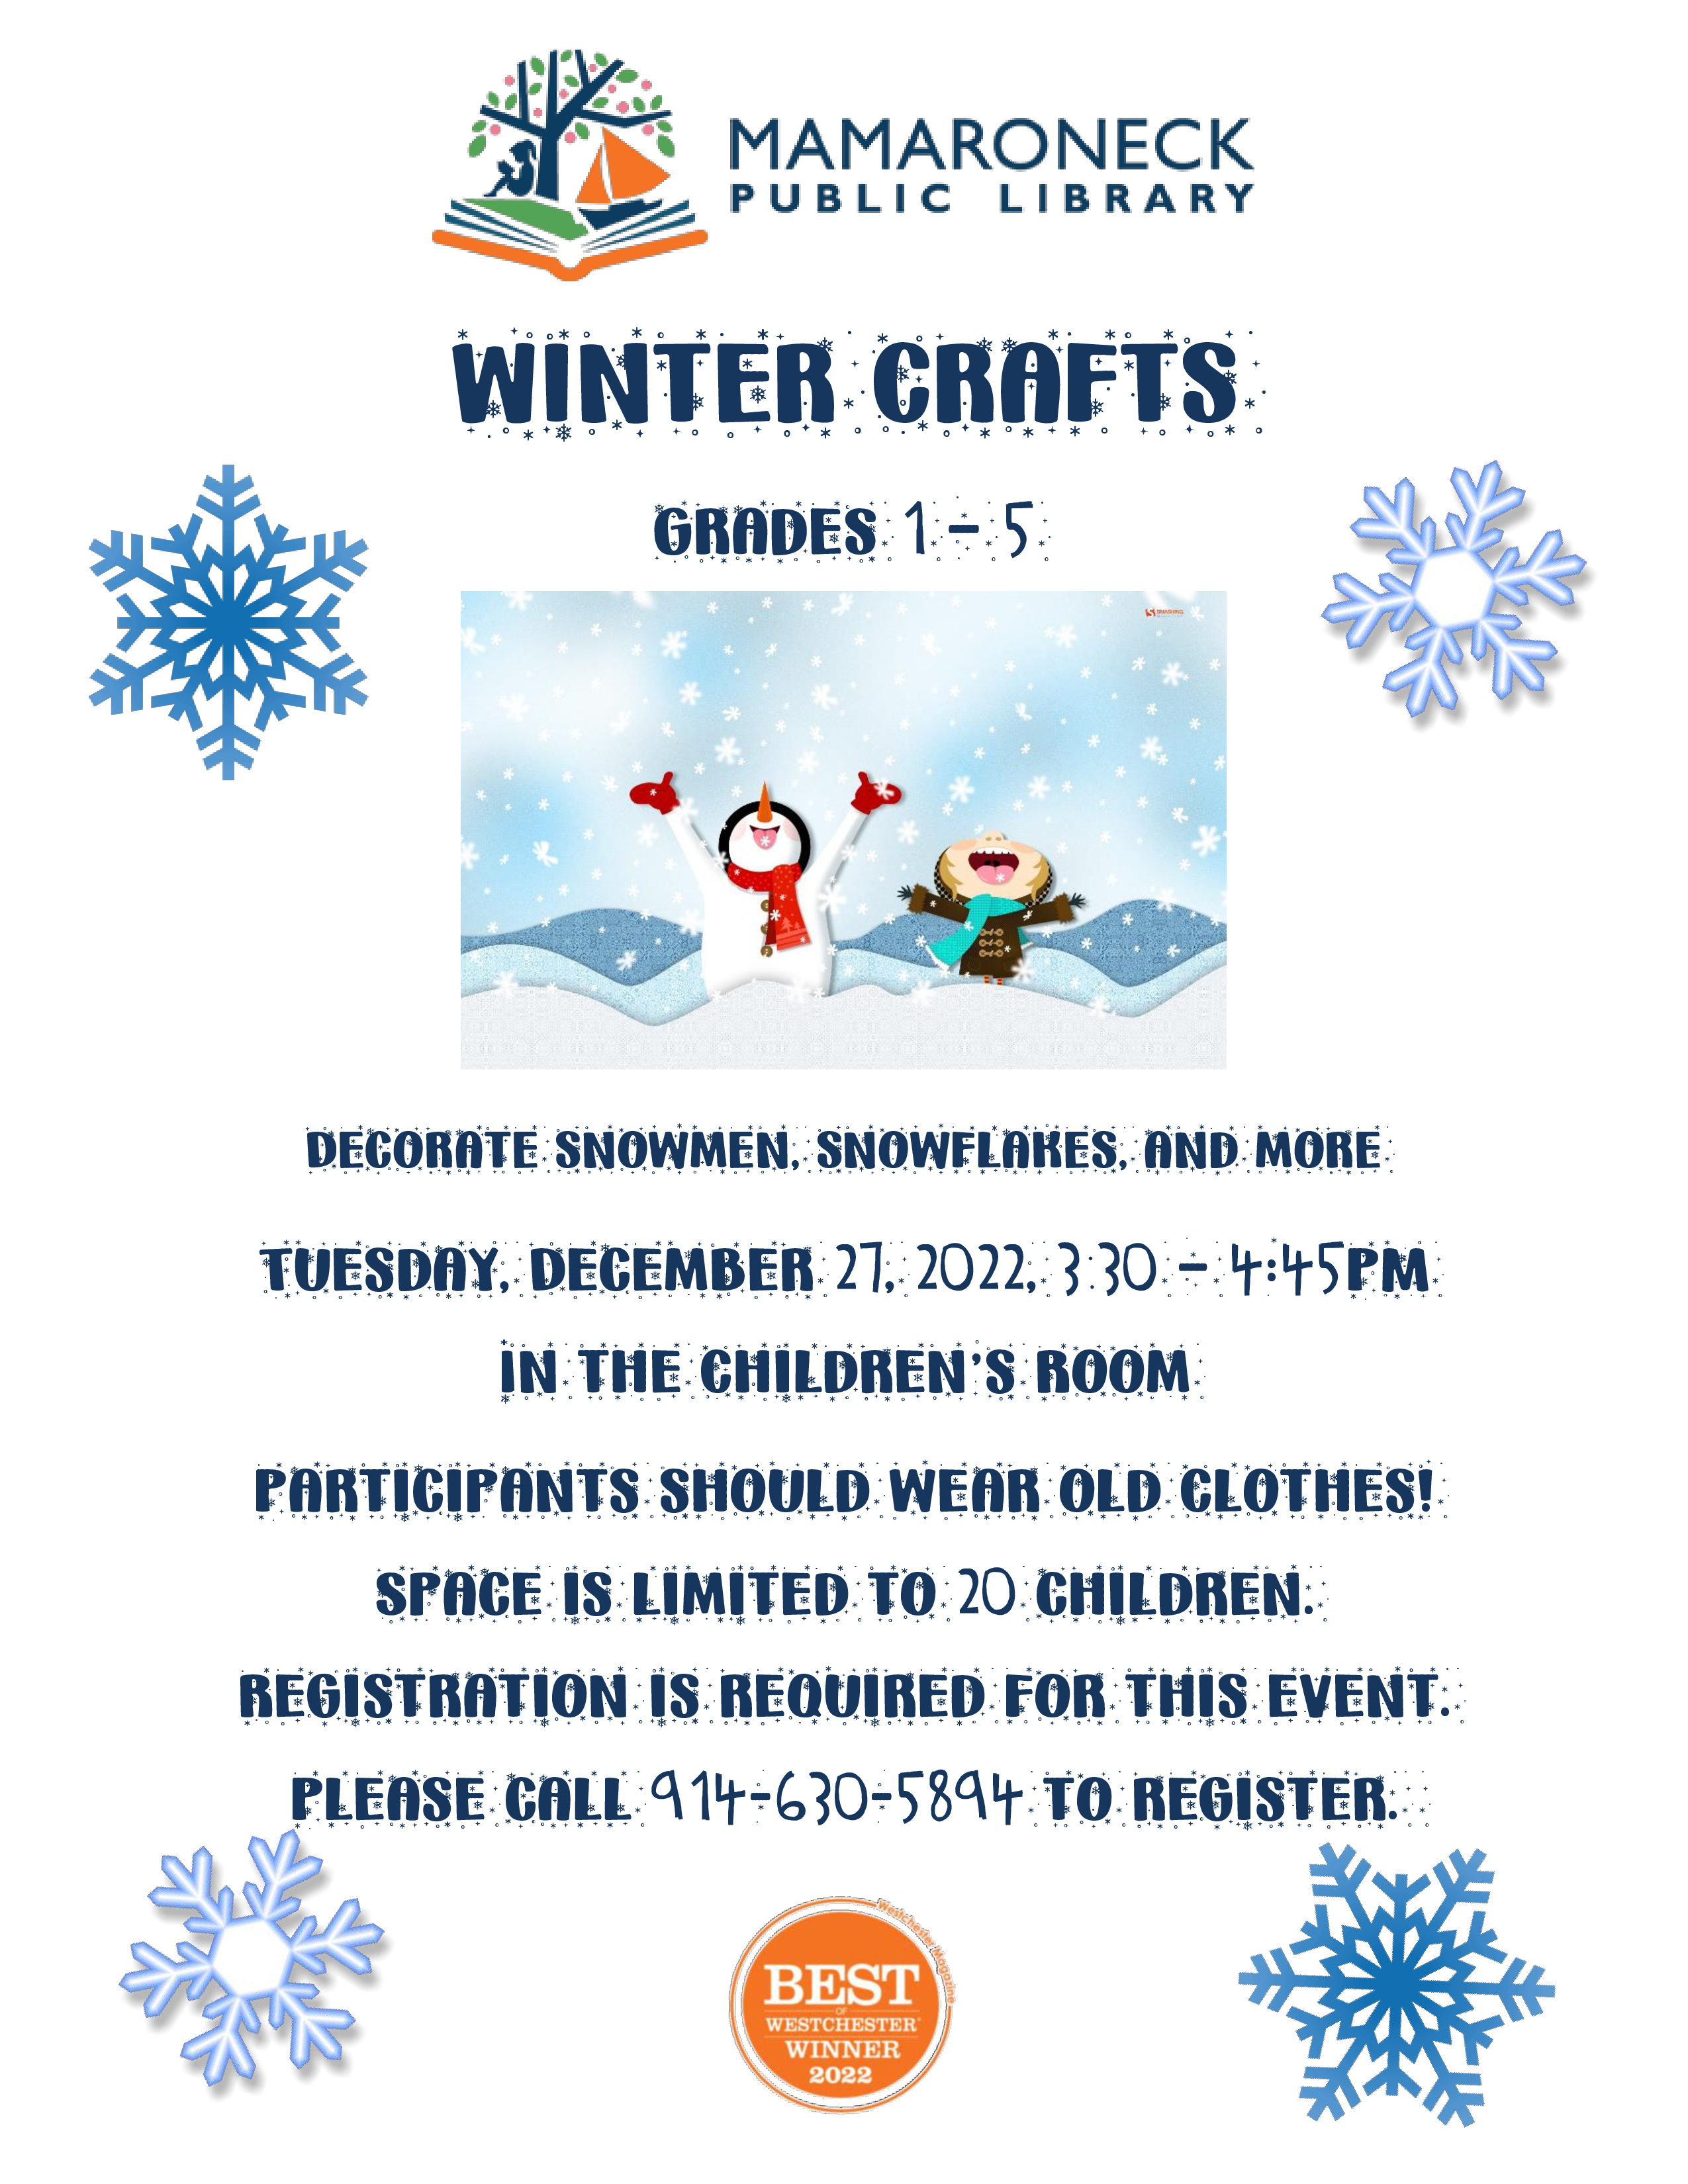 12/27 Winter Crafts for children, grades 1-5, children's room